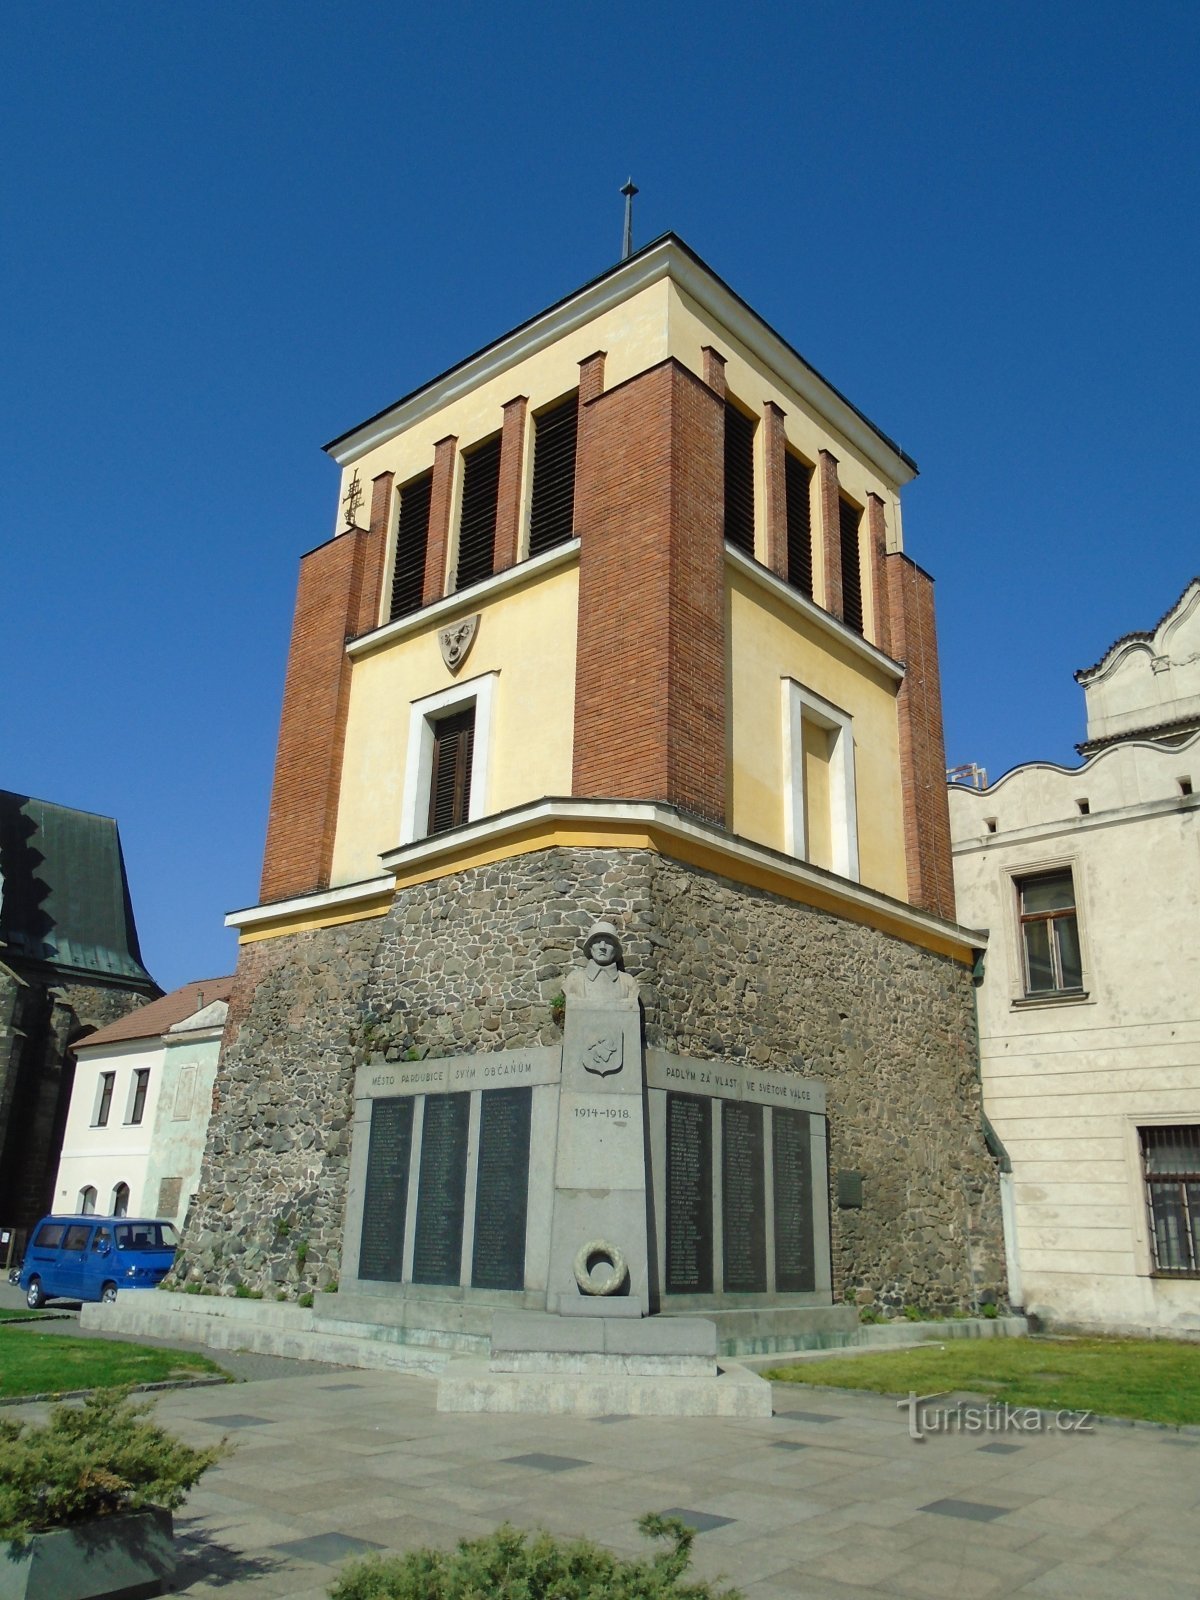 Tháp chuông ở nhà thờ St. Bartholomew, Sứ đồ (Pardubice)